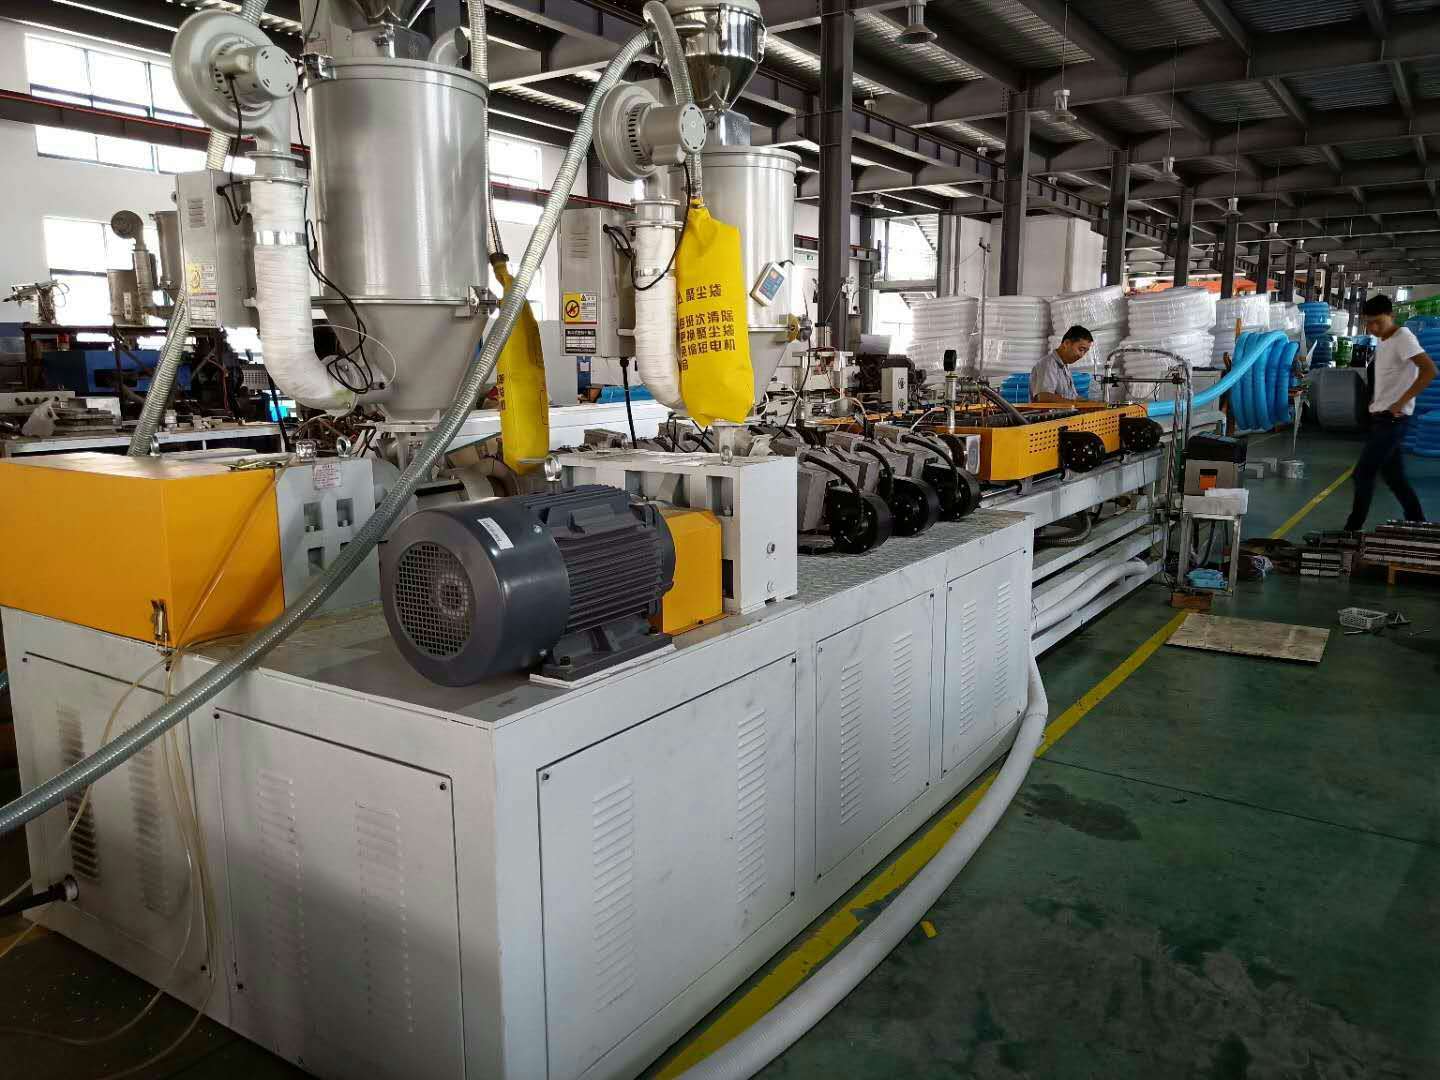 HDPE管材生产设备